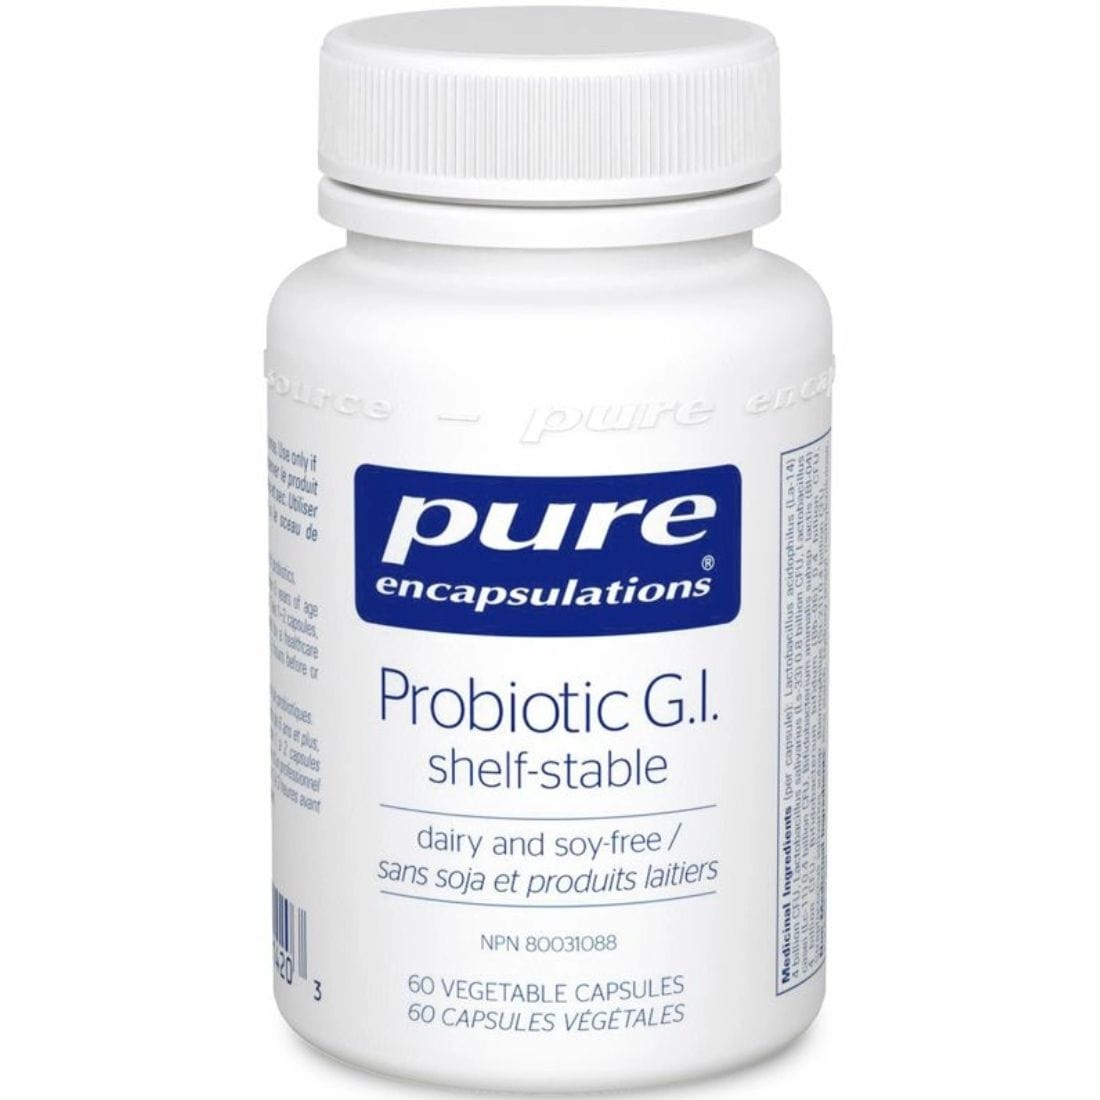 Pure Encapsulations Probiotic GI, 60 Capsules